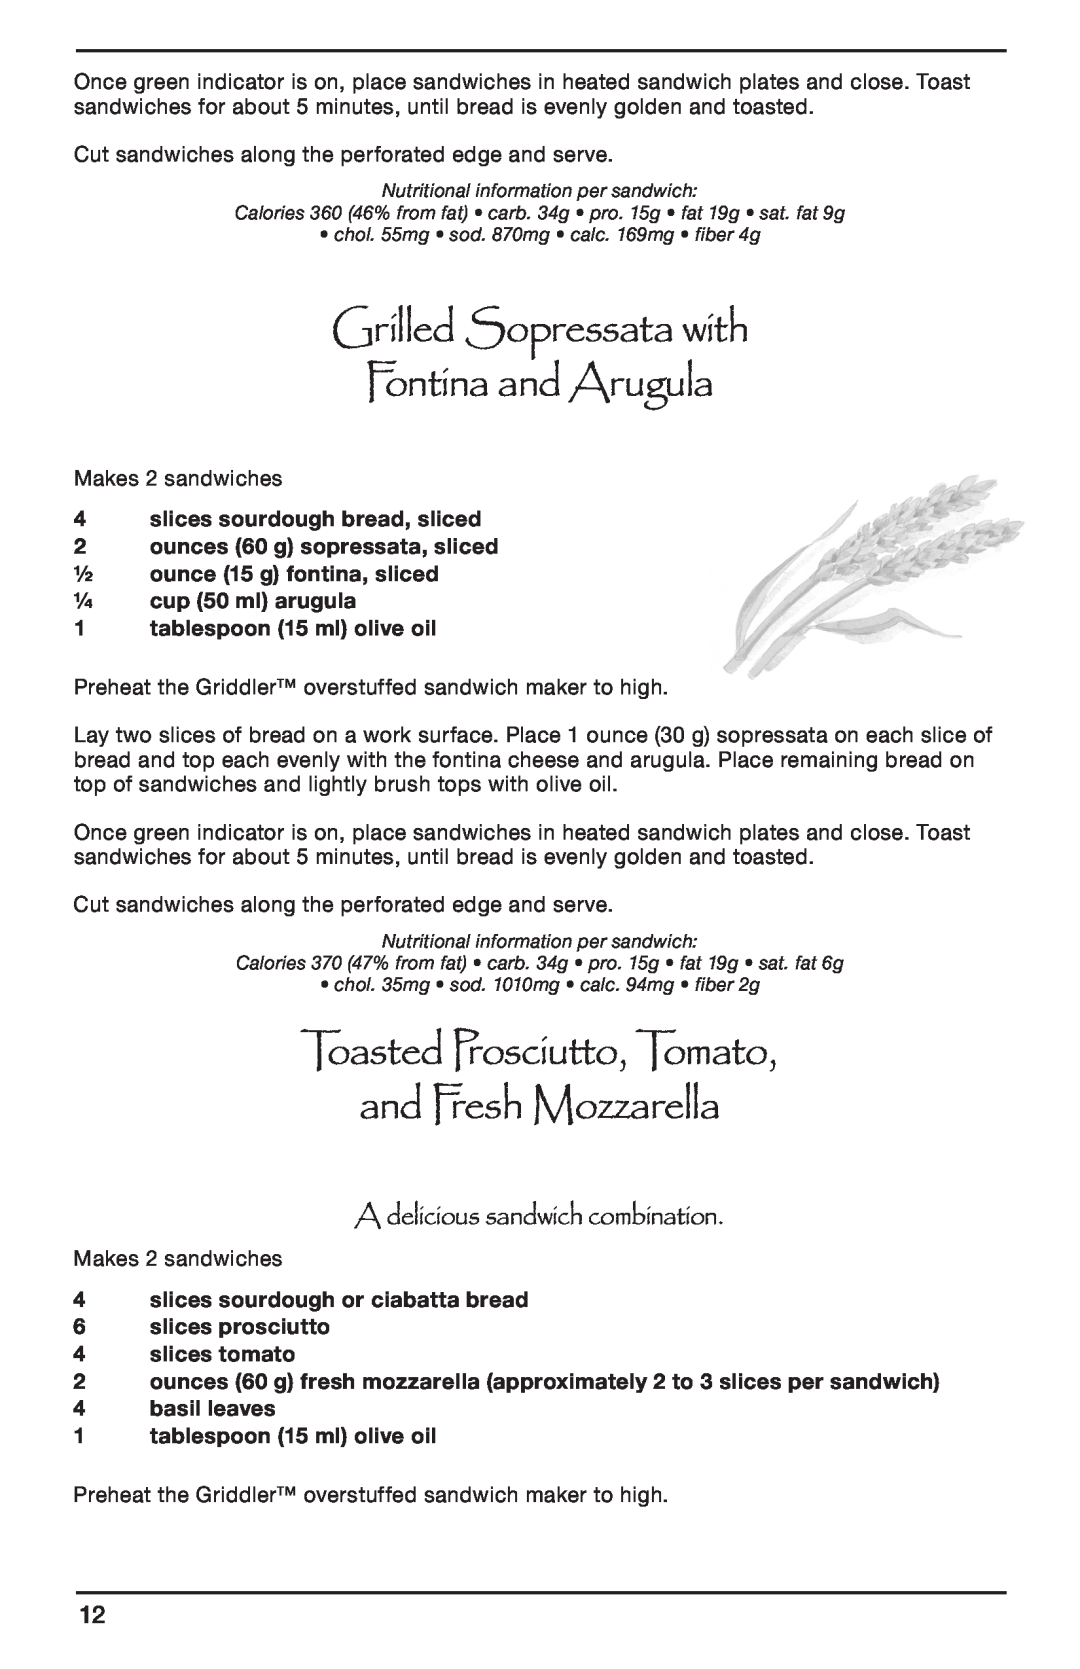 Cuisinart CGR-SMC manual Grilled Sopressata with Fontina and Arugula, Toasted Prosciutto, Tomato and Fresh Mozzarella 